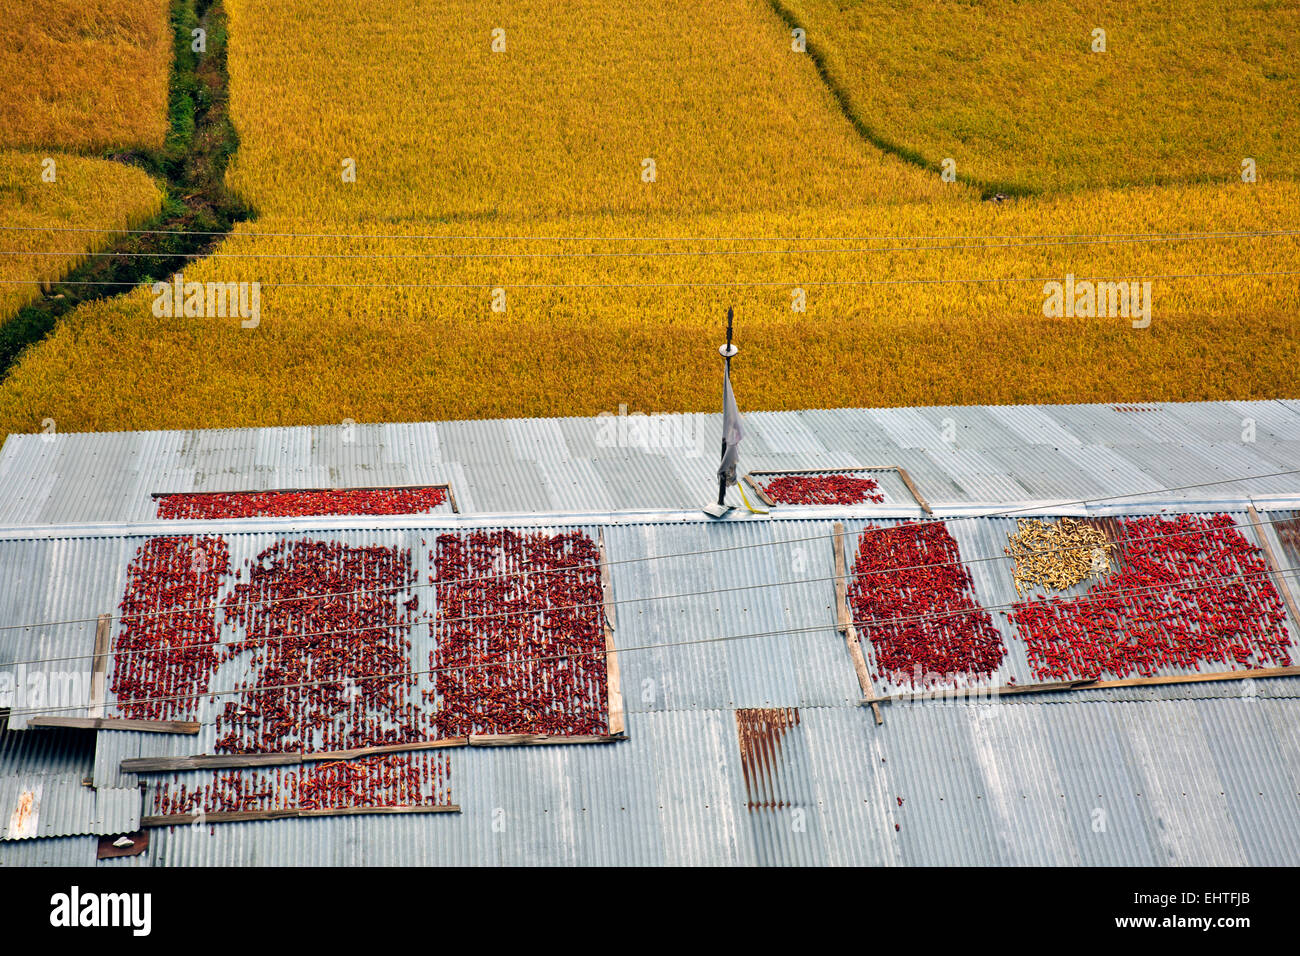 BU00383-00... BHUTAN - Paprika Trocknen auf einem Dach Bauernhaus am Rande der Felder von rotem Reis im Paro Tal in der Nähe von Paro. Stockfoto